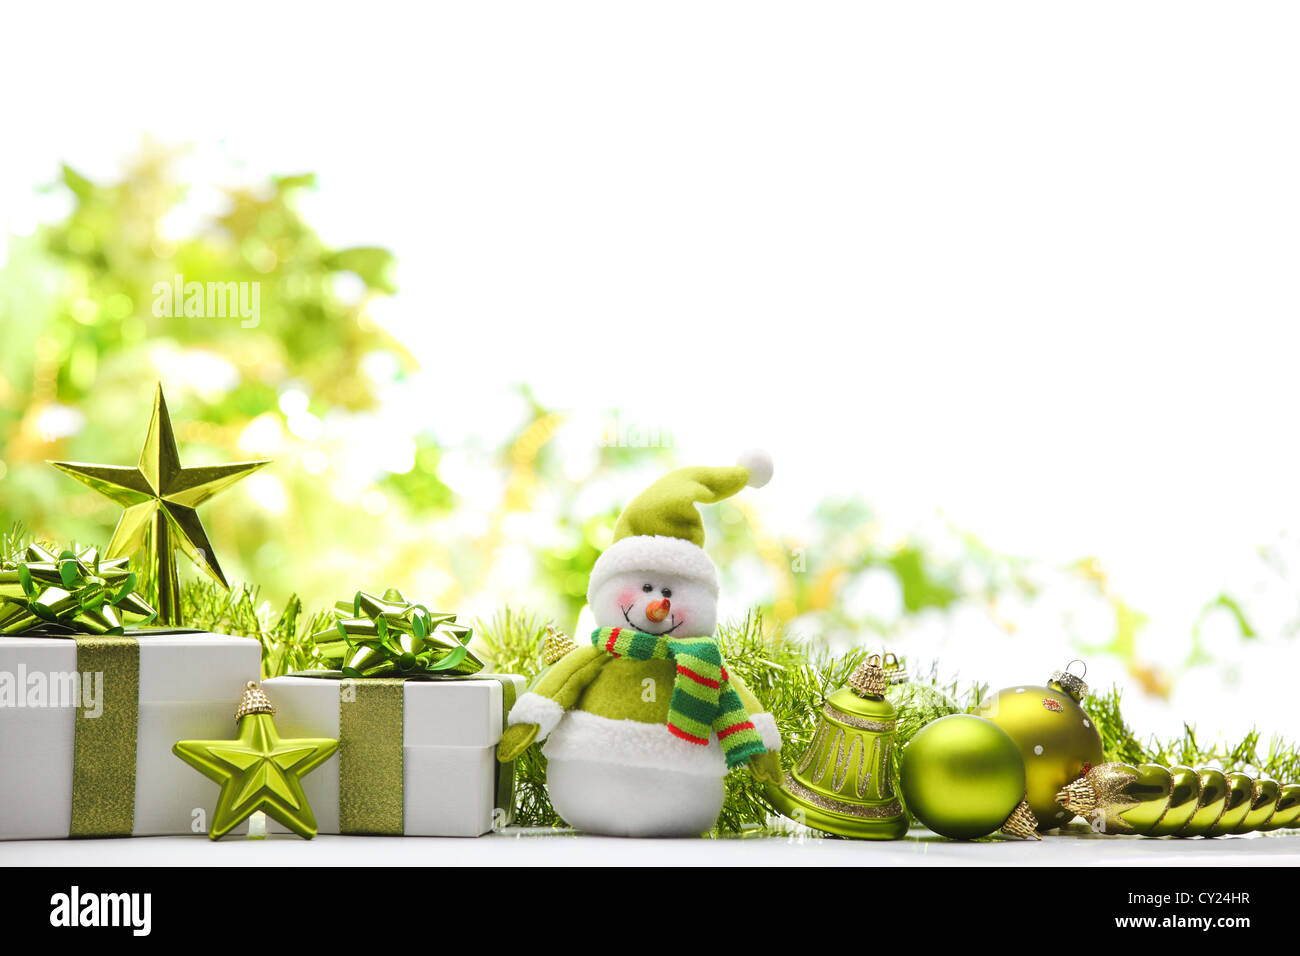 Weihnachtsschmuck, Schneemann und Geschenke auf abstrakten Hintergrund. Stockfoto